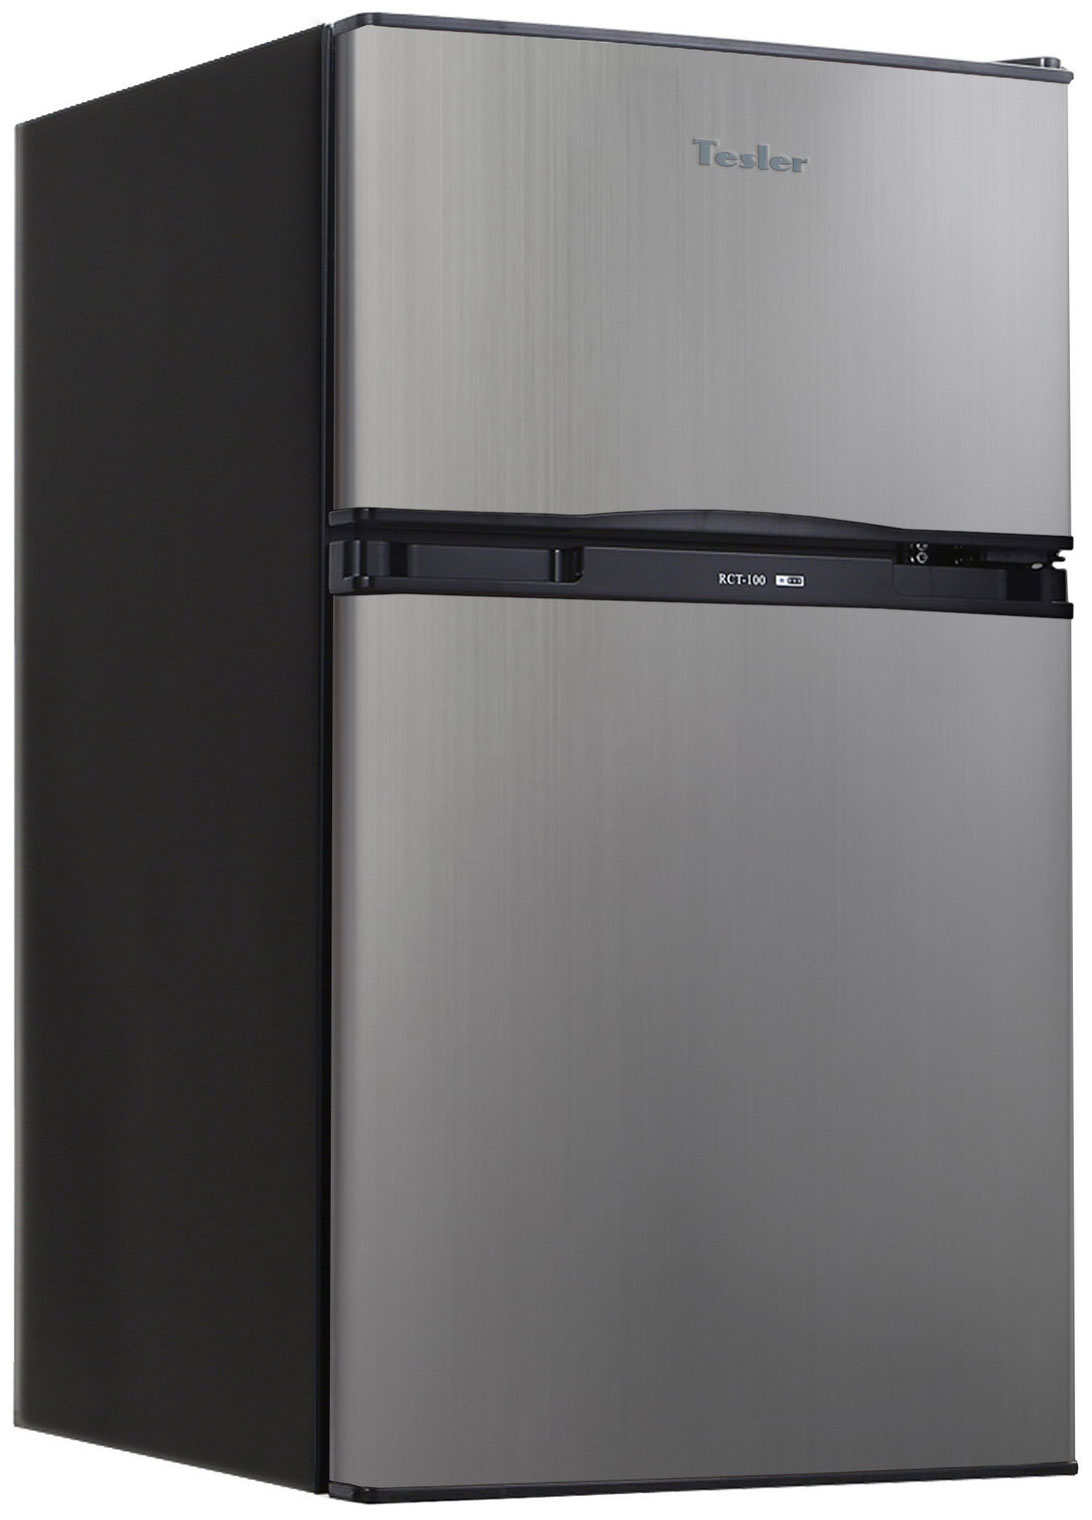 Двухкамерный холодильник TESLER RCT-100 GRAPHITE двухкамерный холодильник tesler rct 100 wood